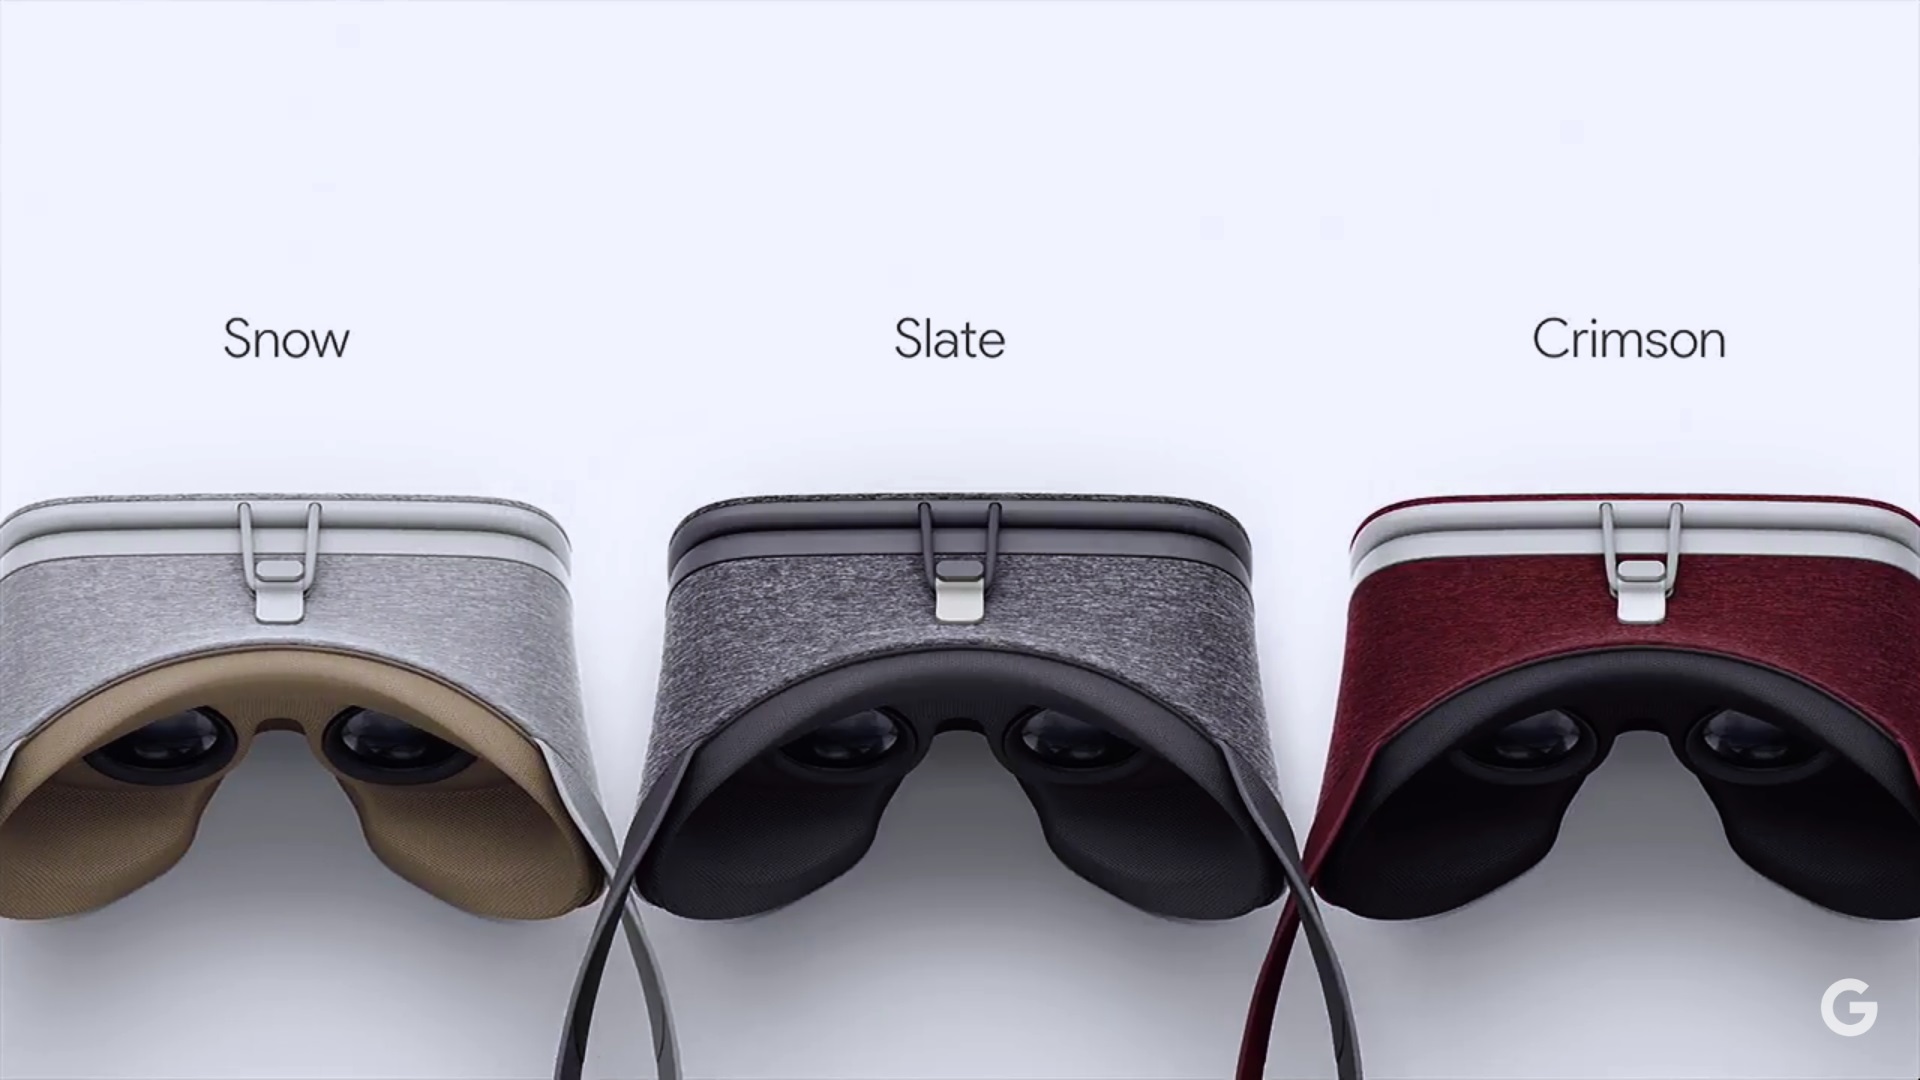 Virtuálna realita Daydream od Google. Headset je z textílie, je preto ľahký a mäkký